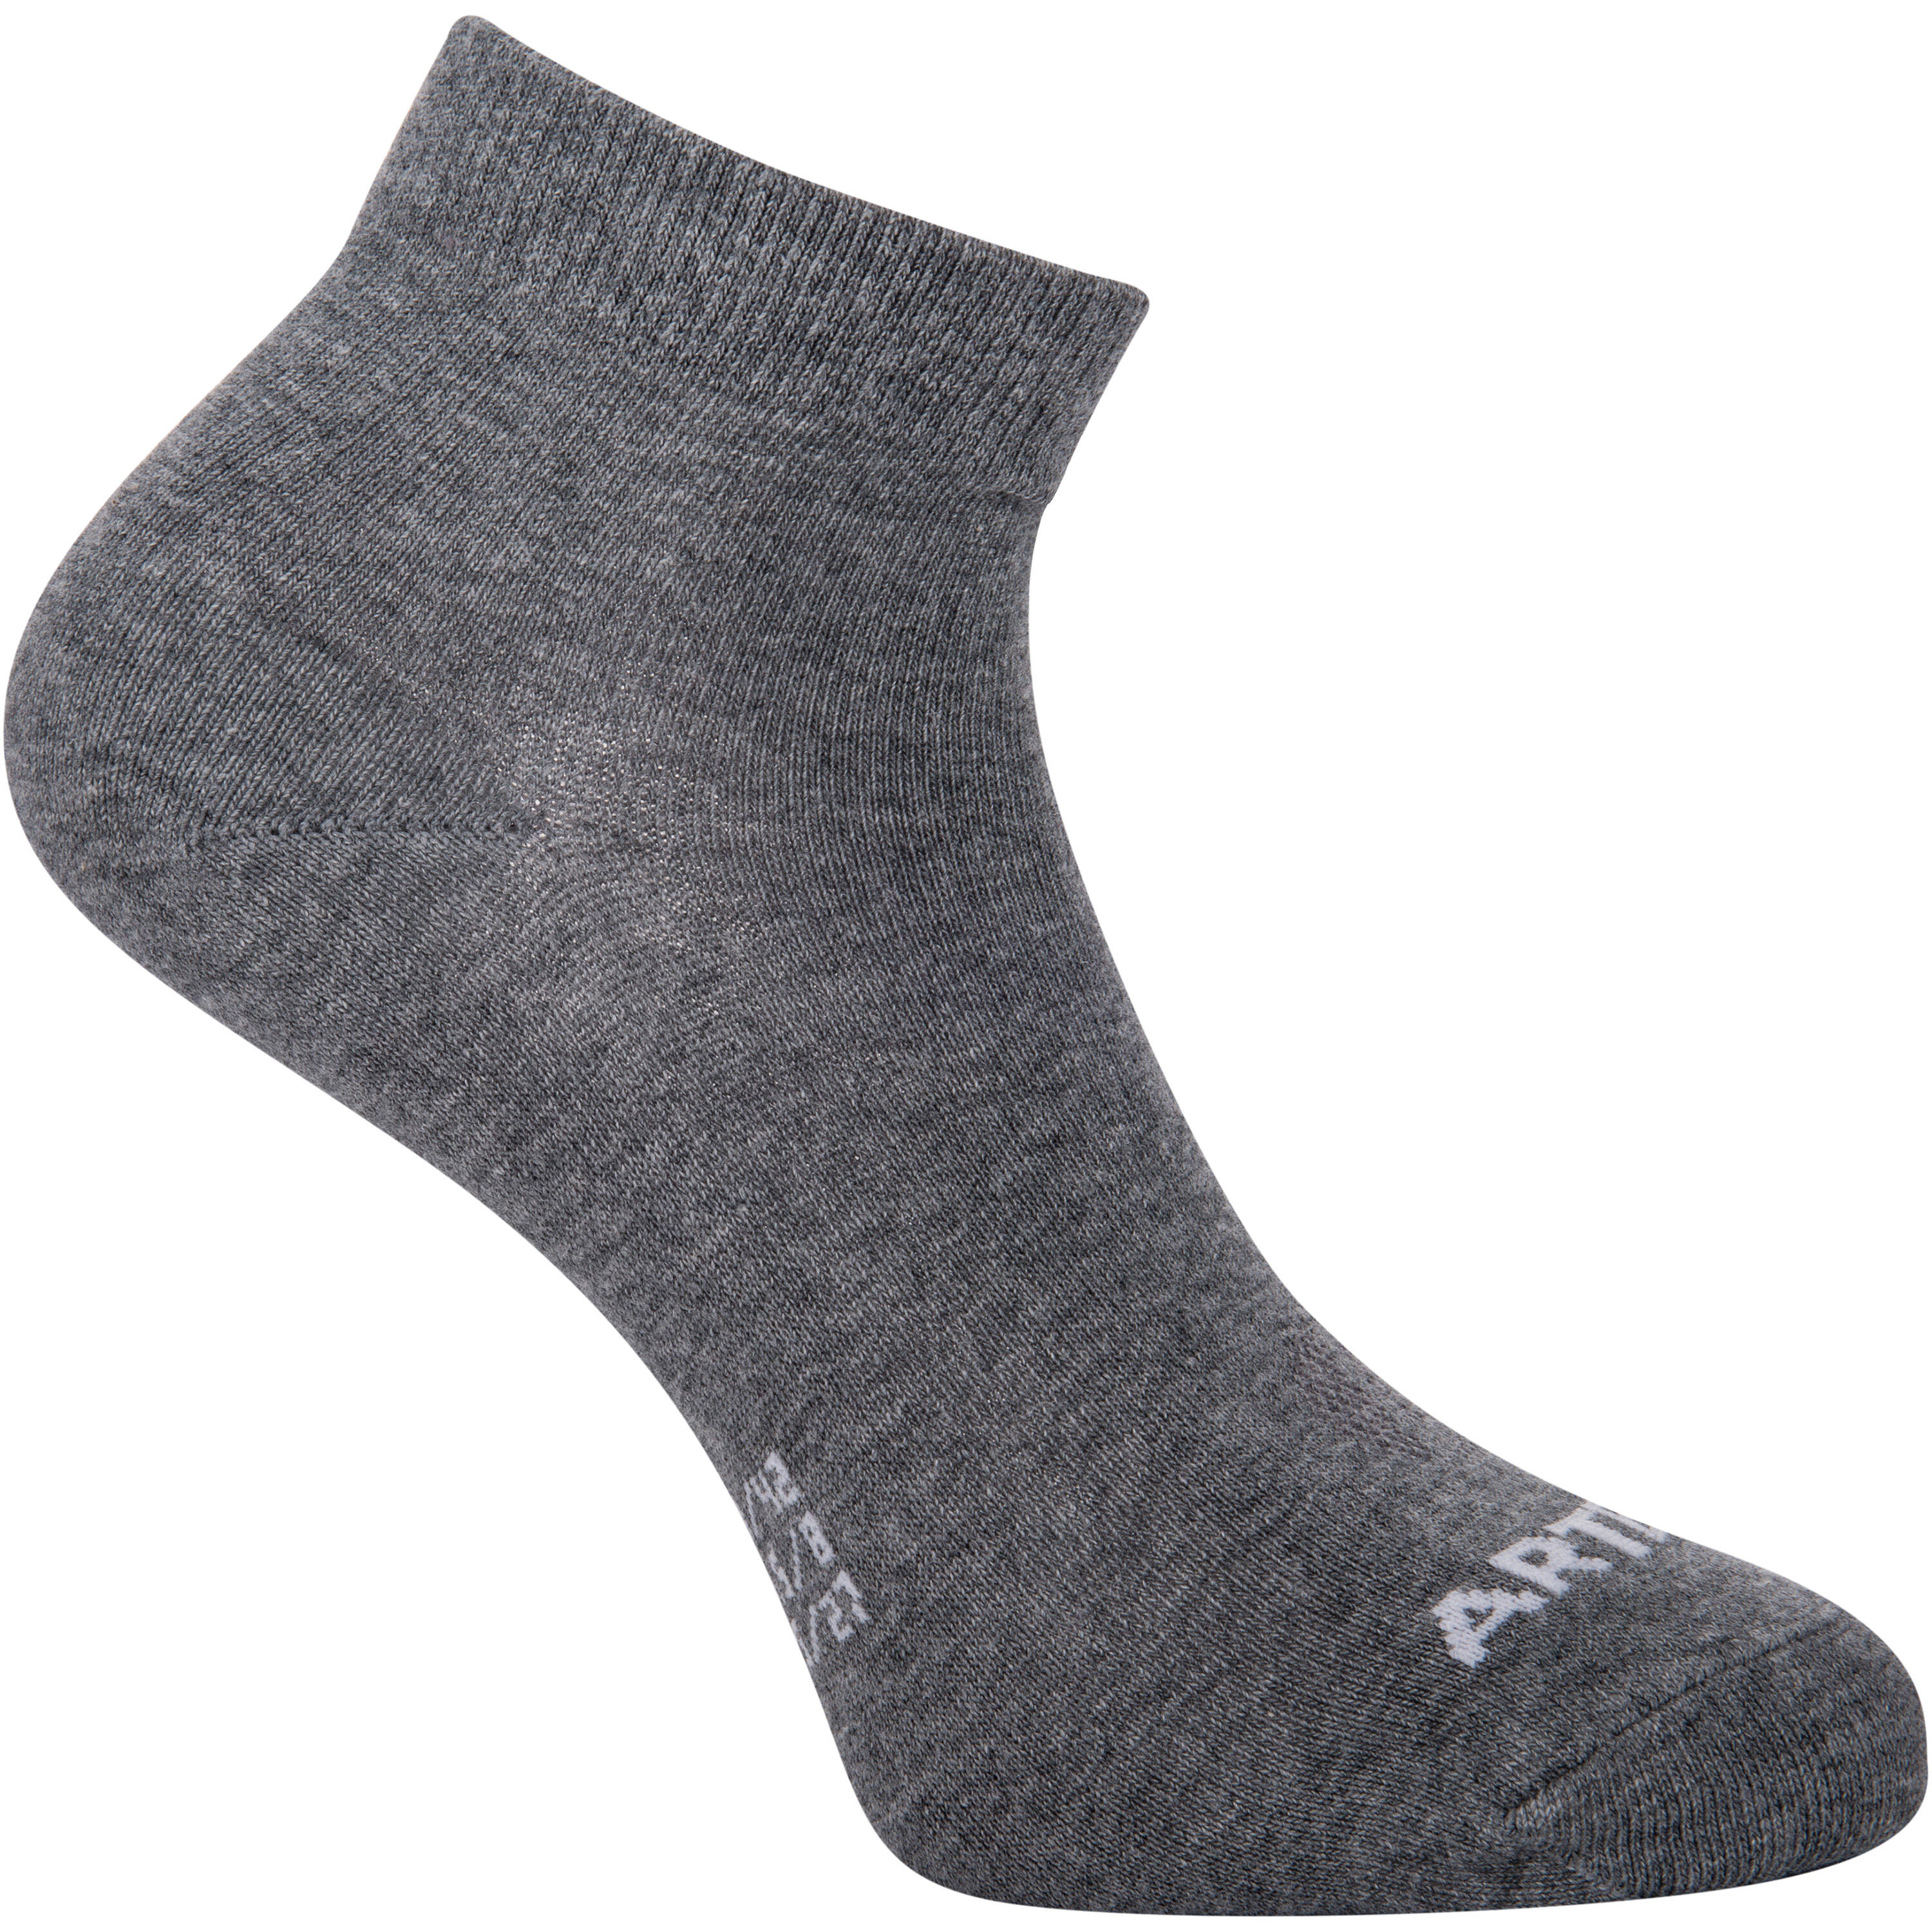 RS 160 Adult Mid Sports Socks Tri-Pack - Dark Grey 2/9